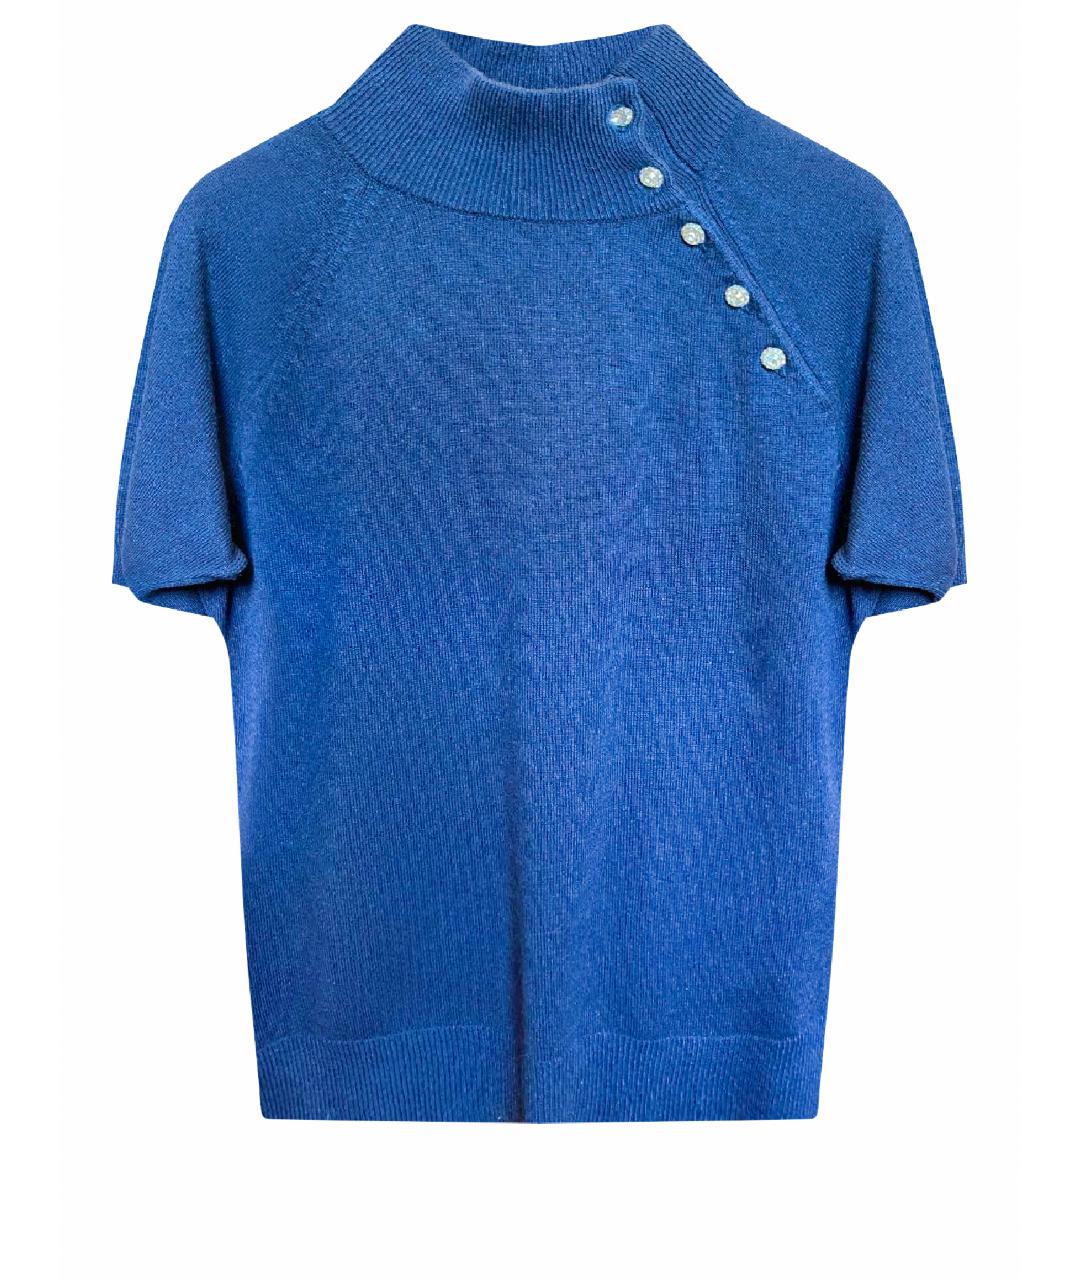 RALPH LAUREN Синий кашемировый джемпер / свитер, фото 1